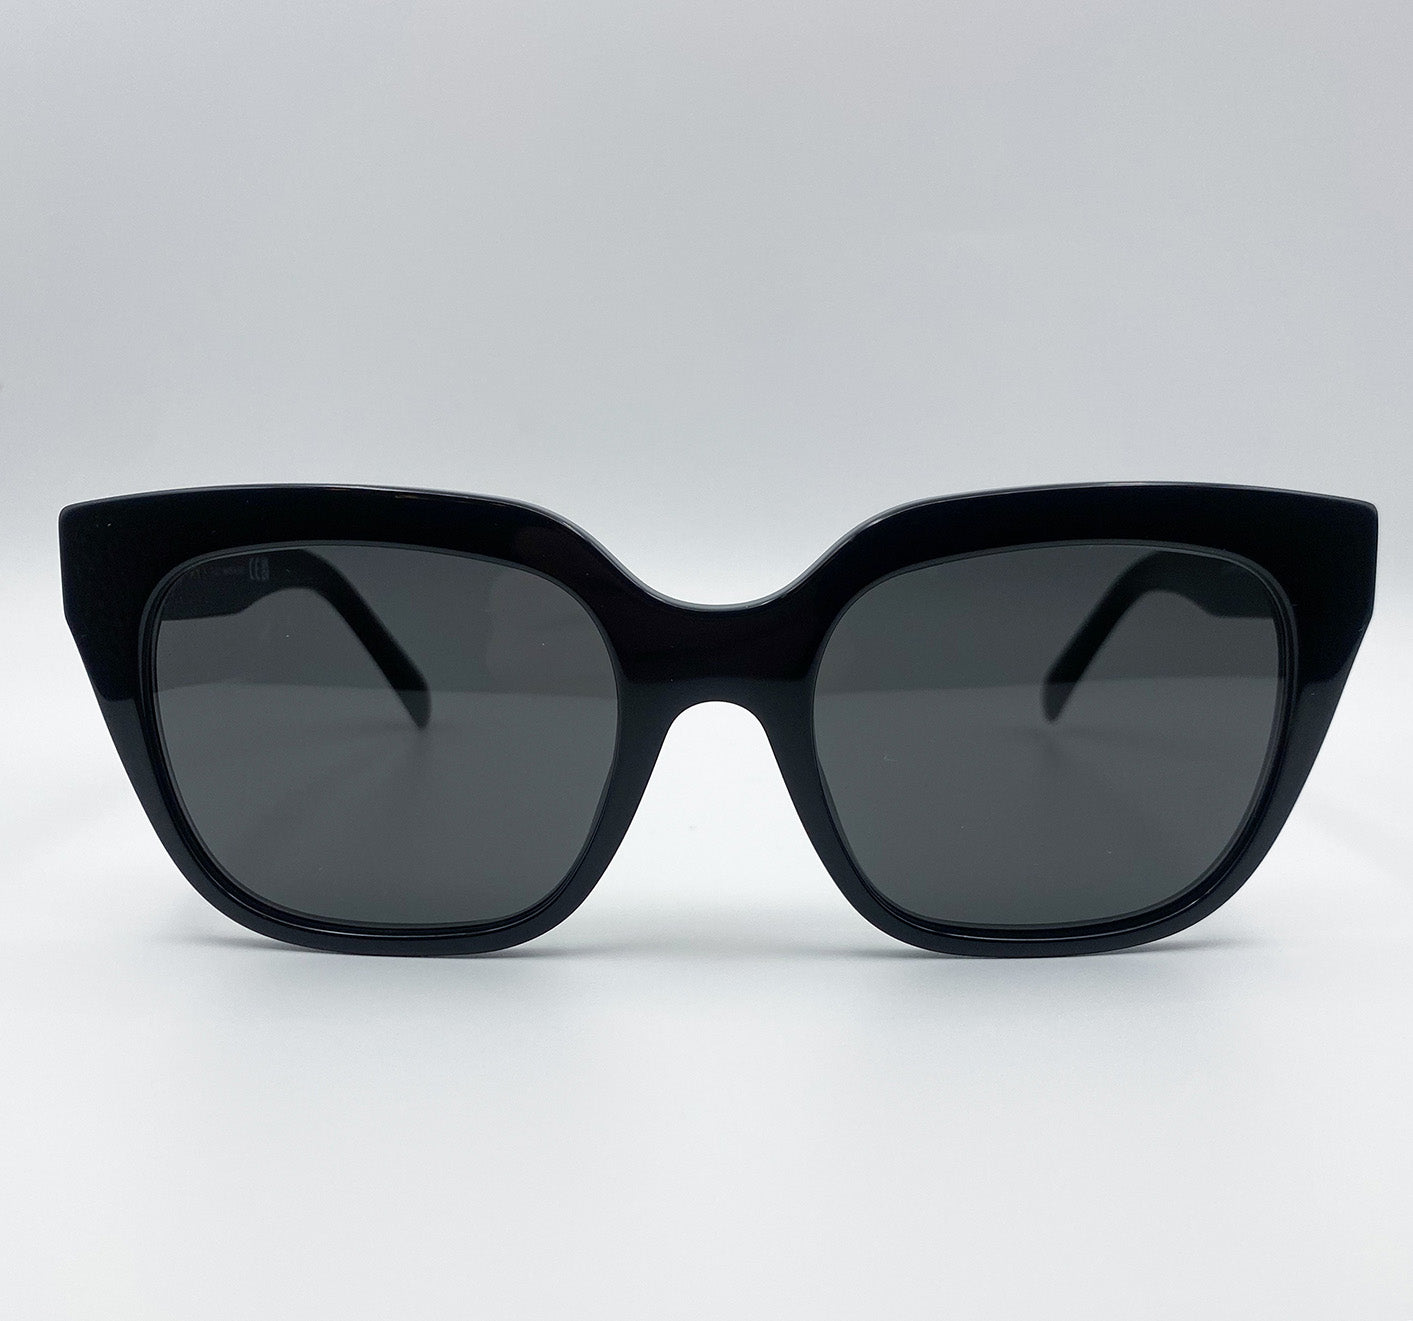 Celine | CL-401 - Sunglasses for Girls